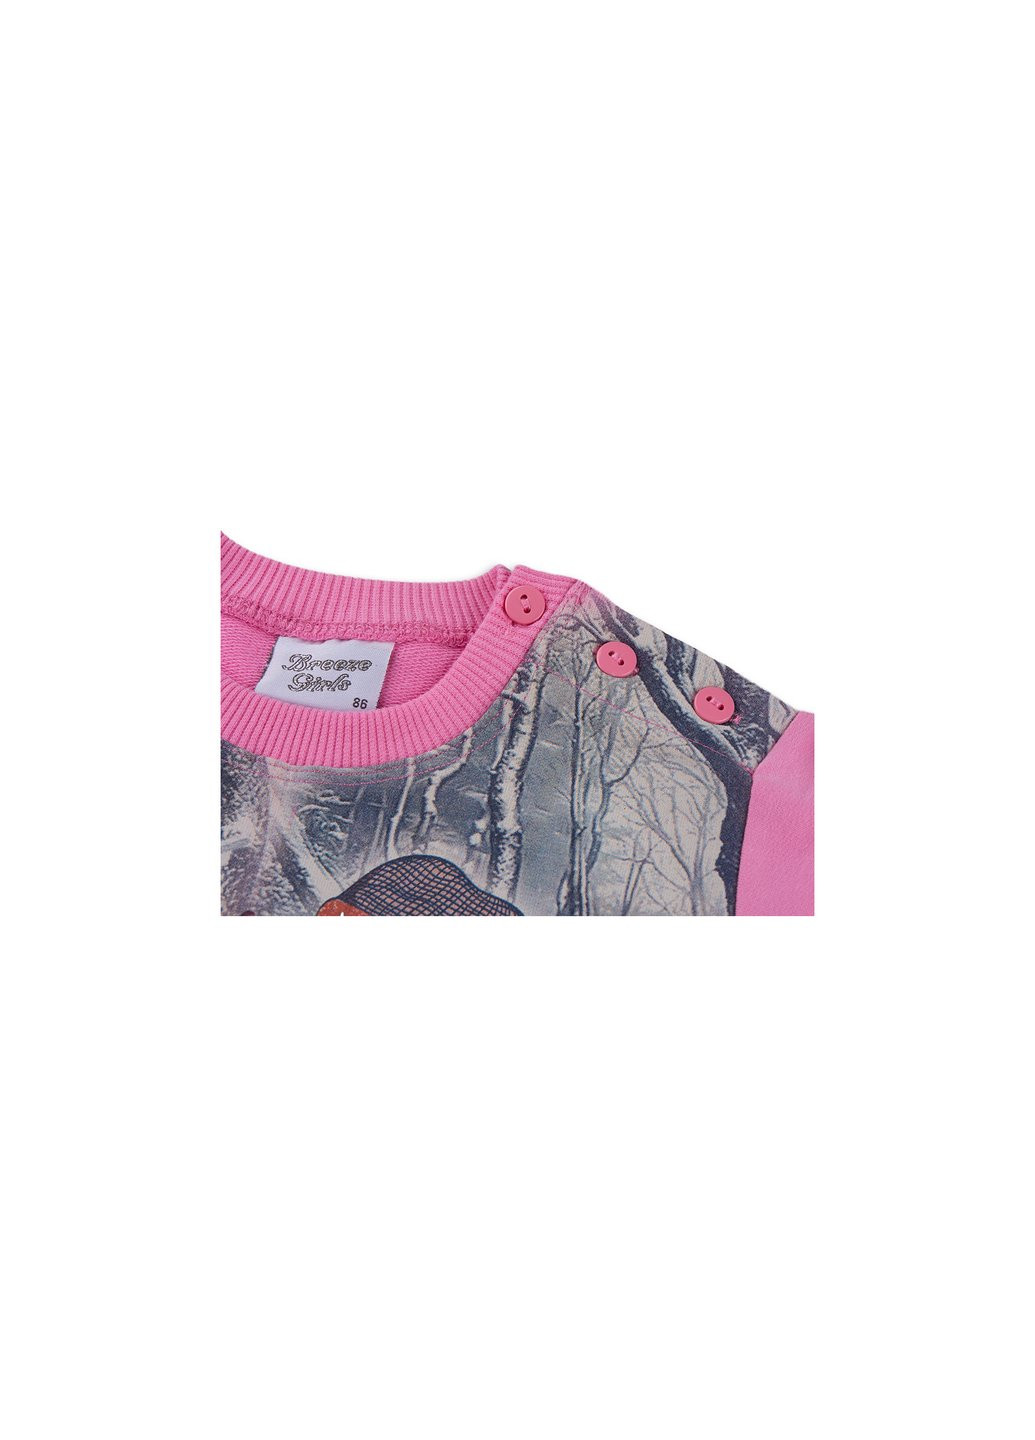 Комбинированный демисезонный набор детской одежды с девочкой и штанишками в цветочек (8075-104/g-pink) Breeze